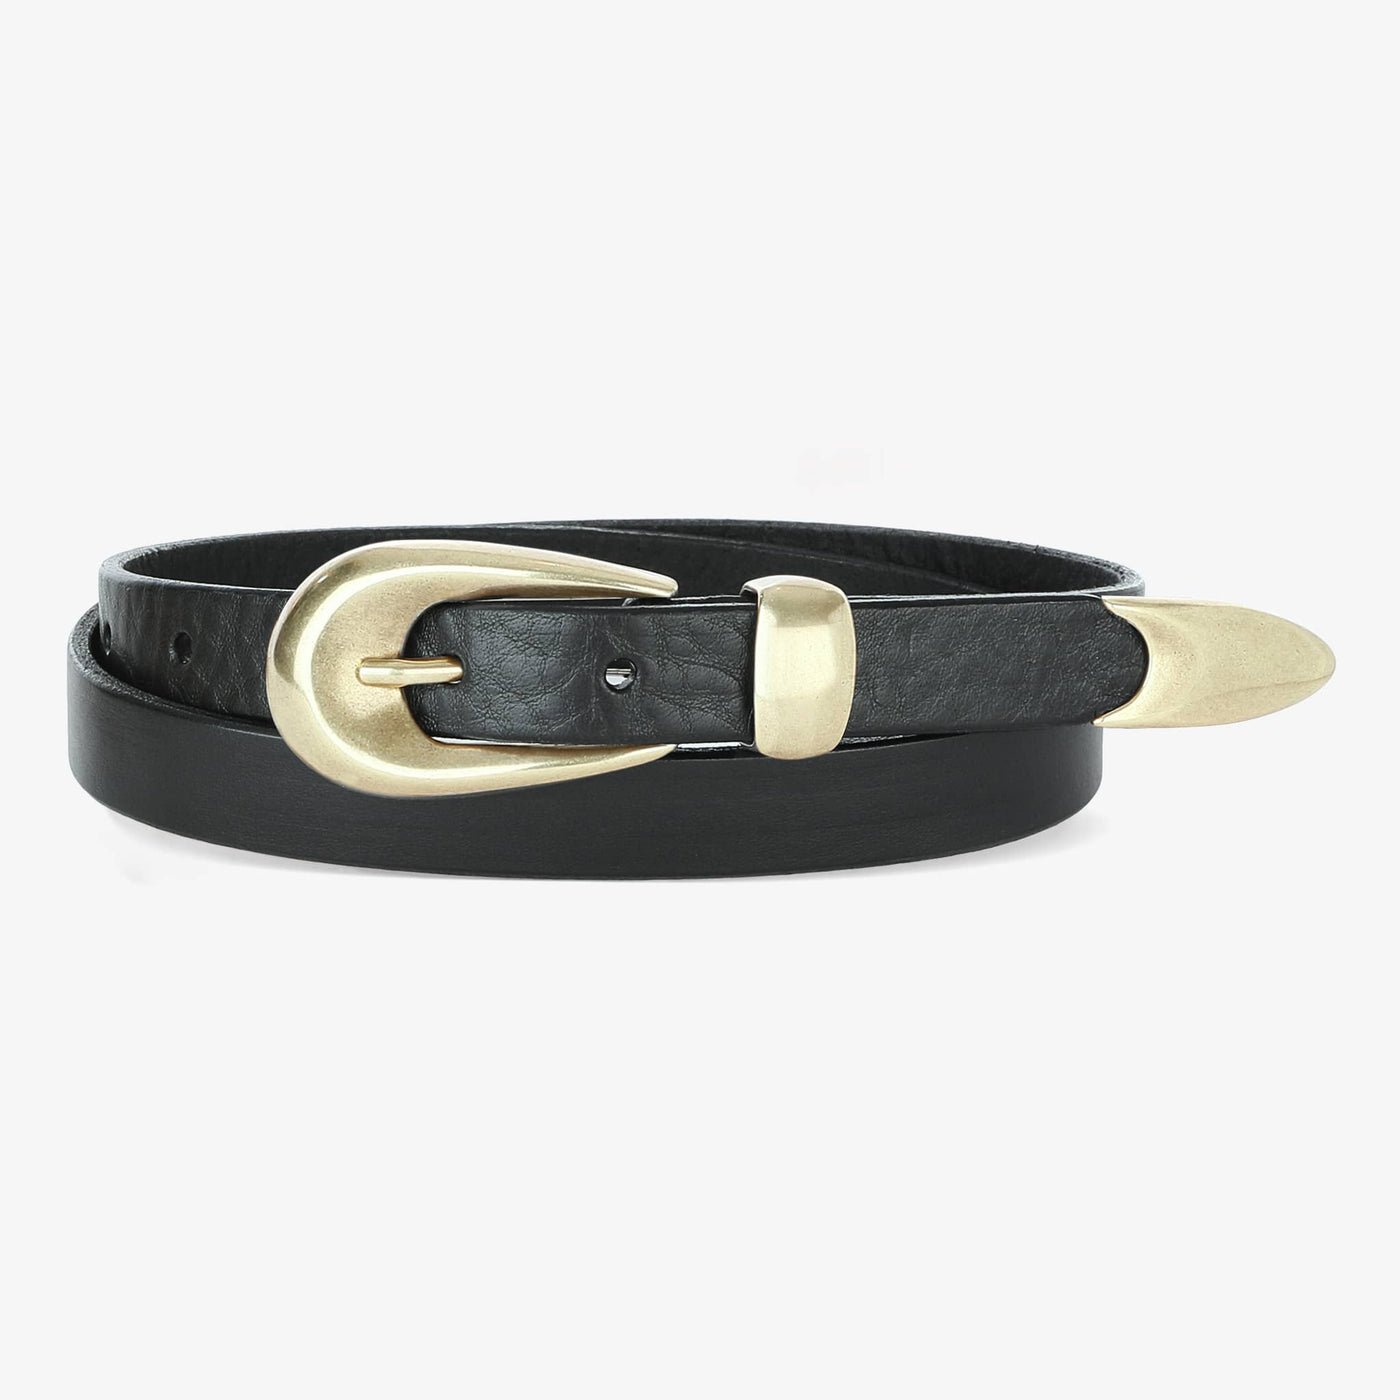 Kitt Bridle BRAVE Leather Belt -- Custom Made for You